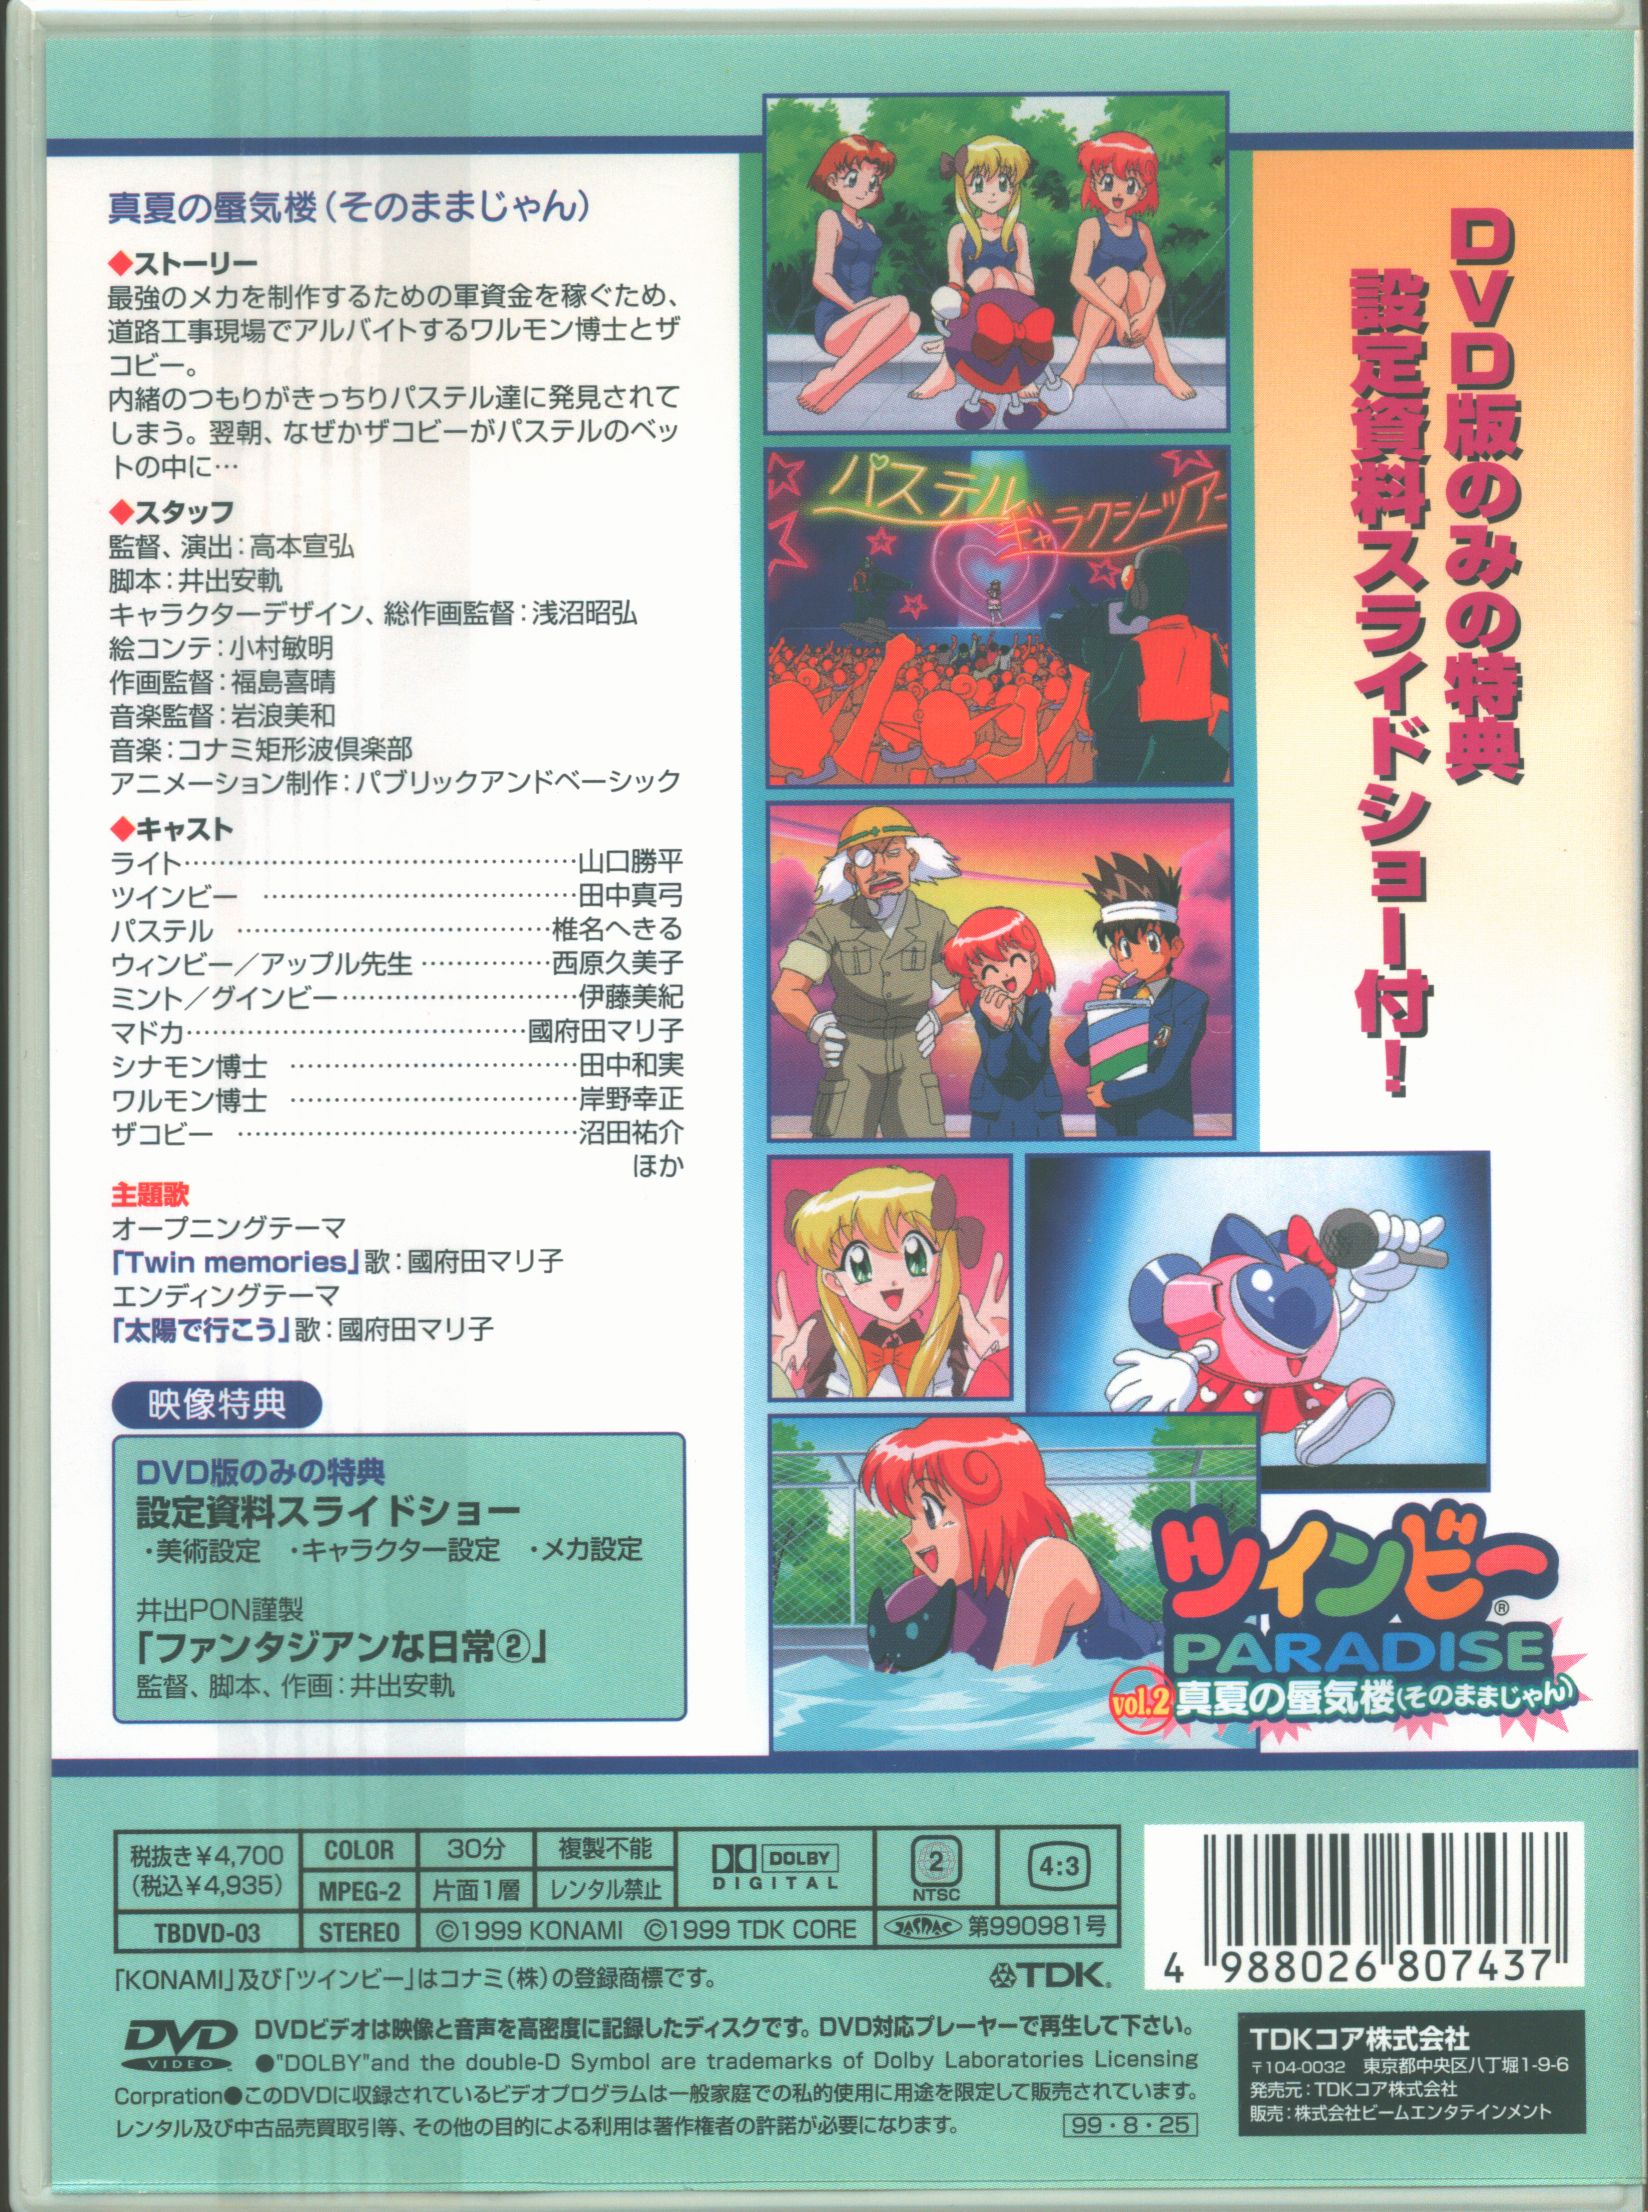 ツインビーPARADISE DVD/BOX ハイエンコードリマスターバージョン - アニメ